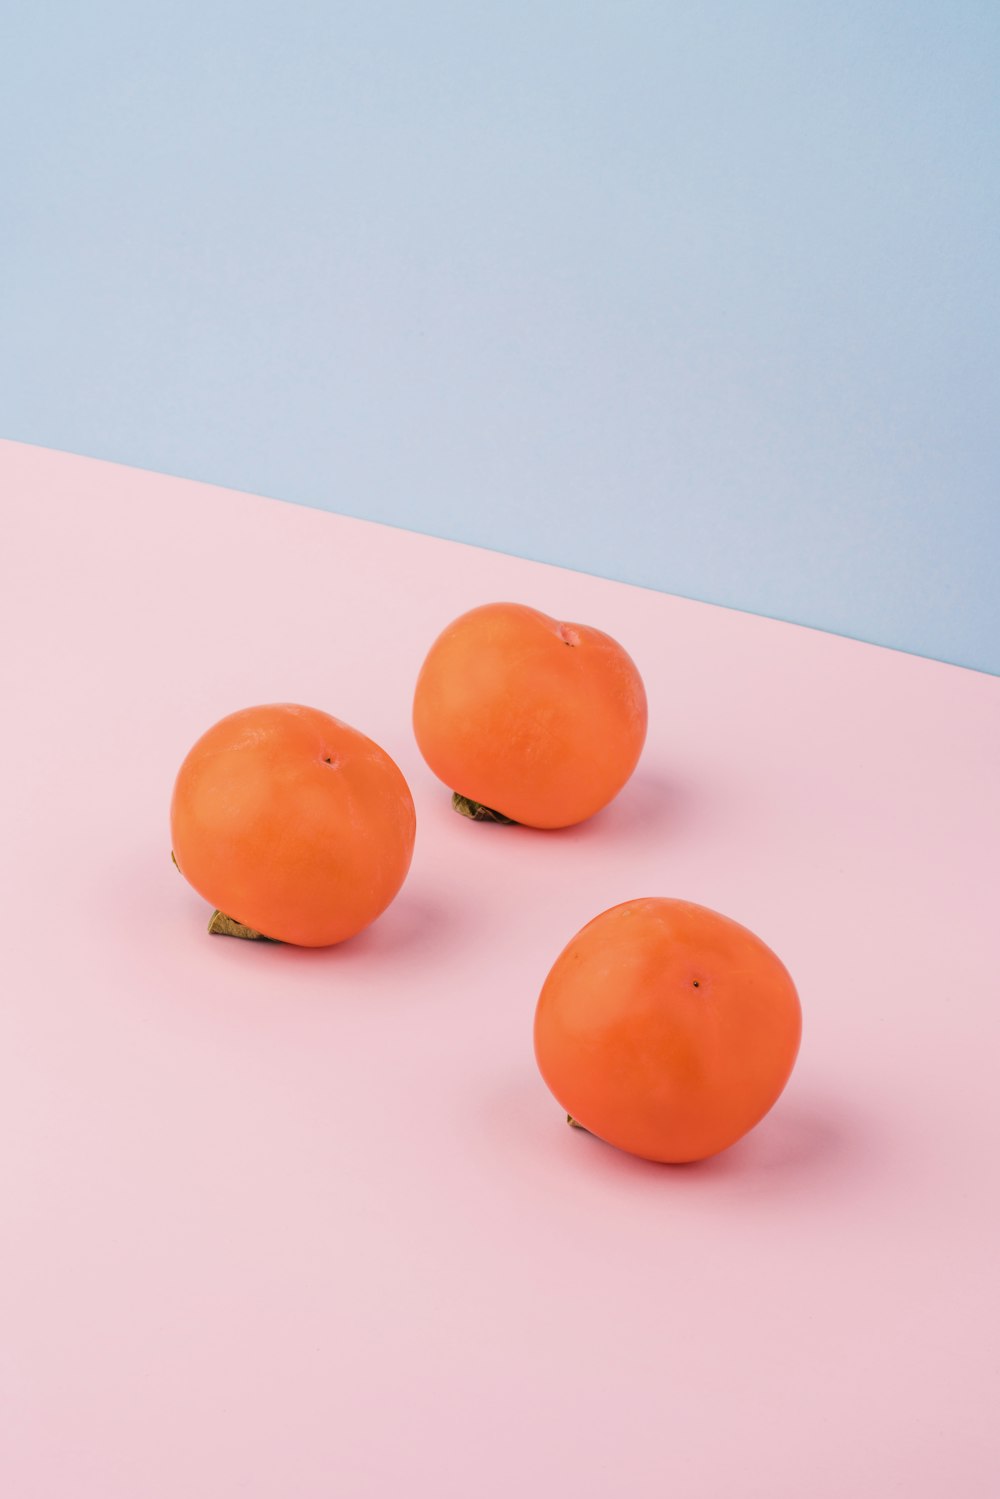 Drei orangefarbene Früchte auf rosa Oberfläche